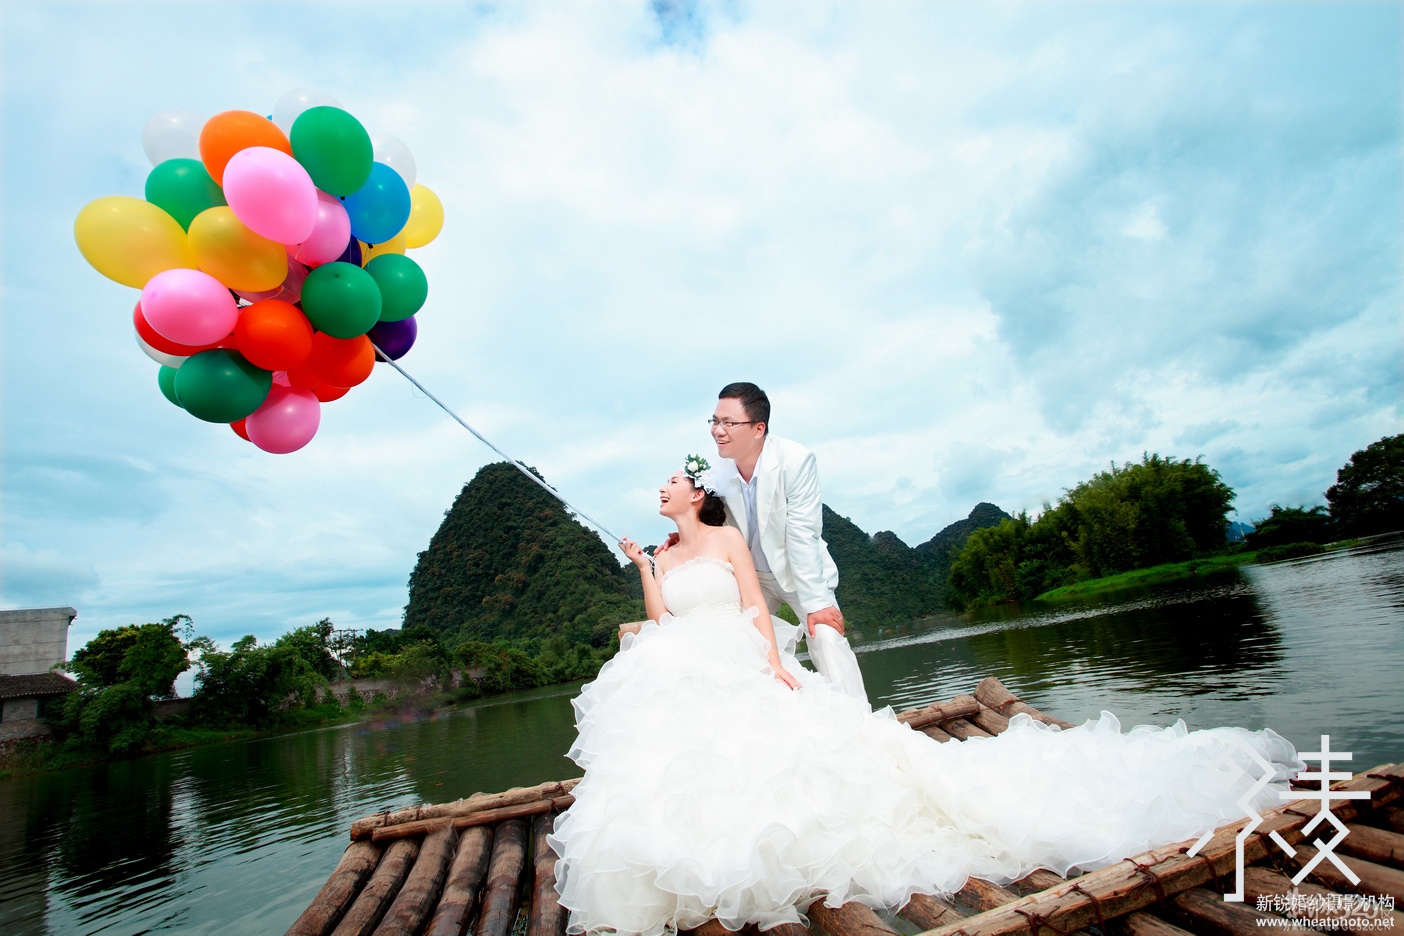 桂林小麦婚纱摄影微信自助导航全新上线670 / 作者:桂林小麦摄影 / 帖子ID:64543